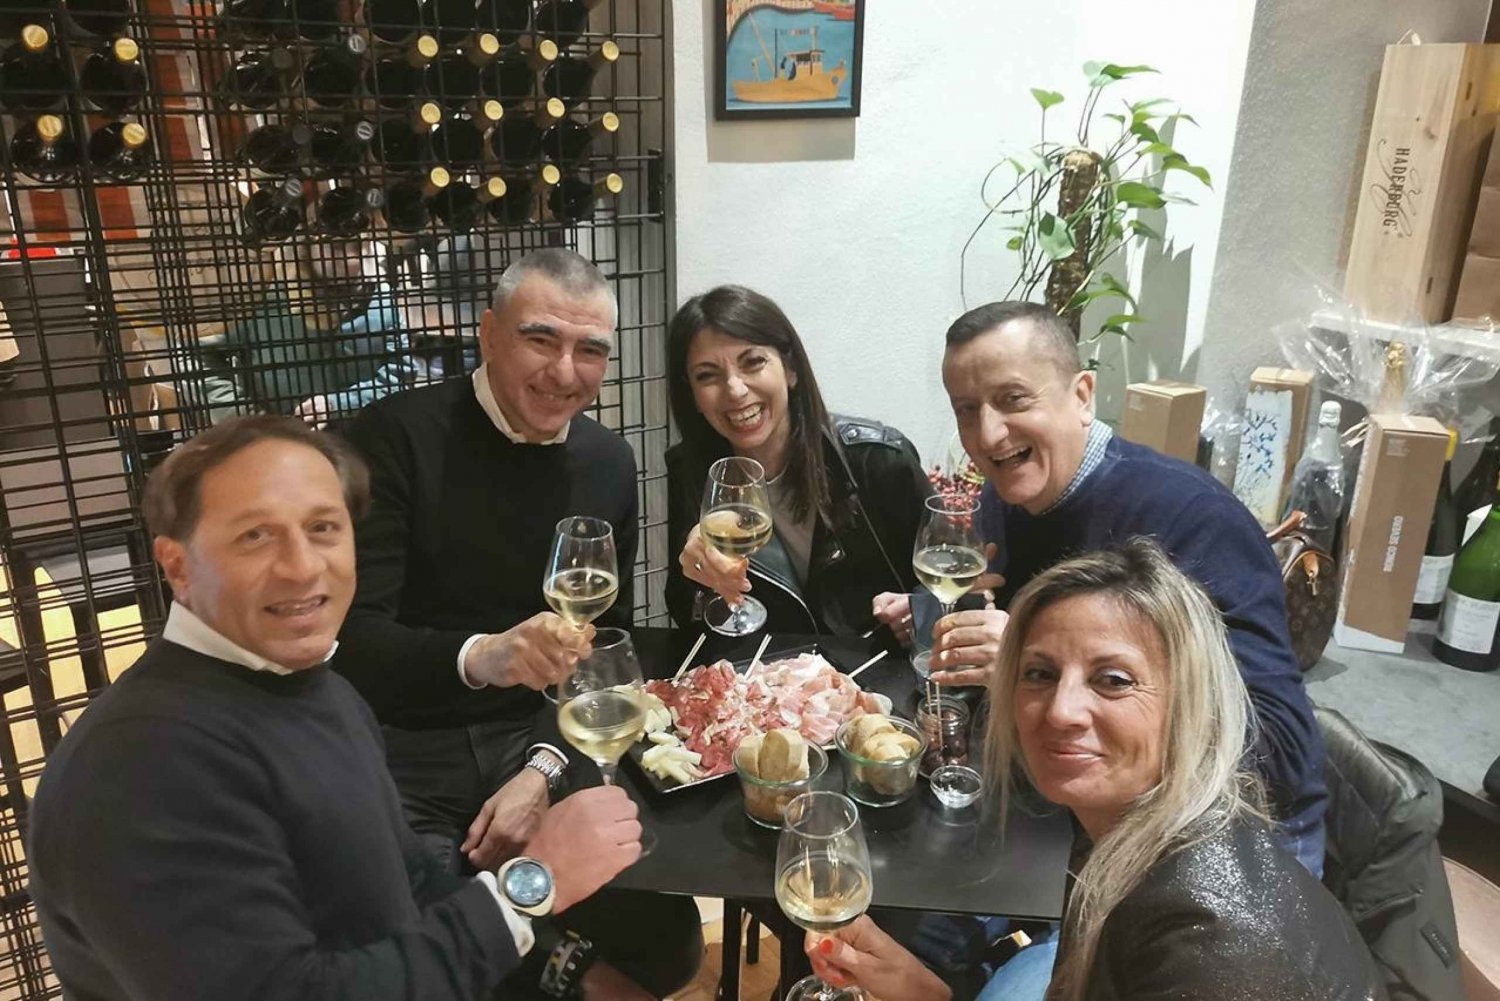 Trieste: Vinprovning från Istrien, Carso och Friuli terroirs